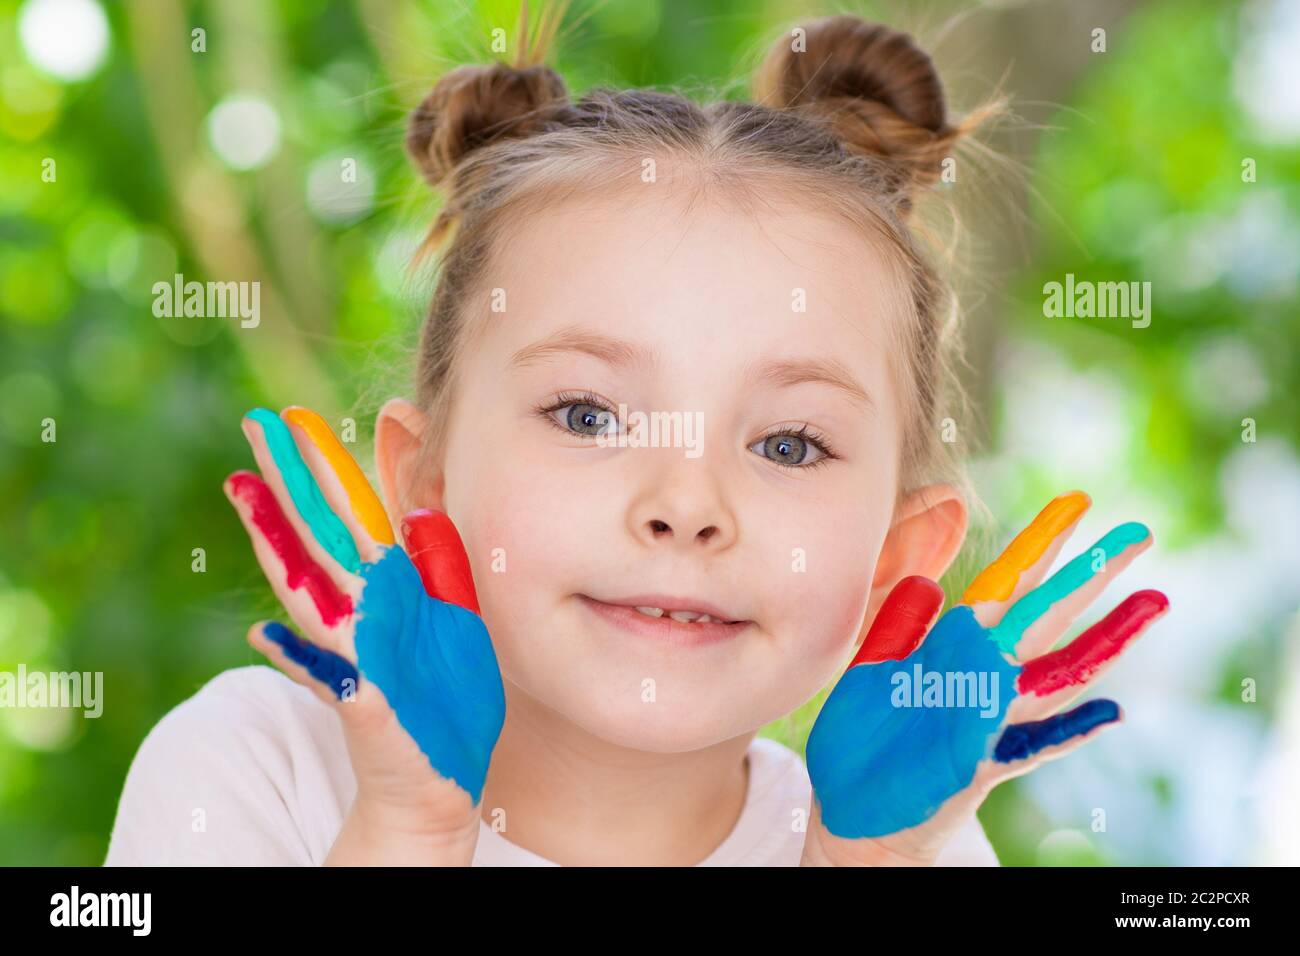 Petite fille avec des mains peintes concept éducation, école, créativité sélection Focus. Photo de haute qualité Banque D'Images